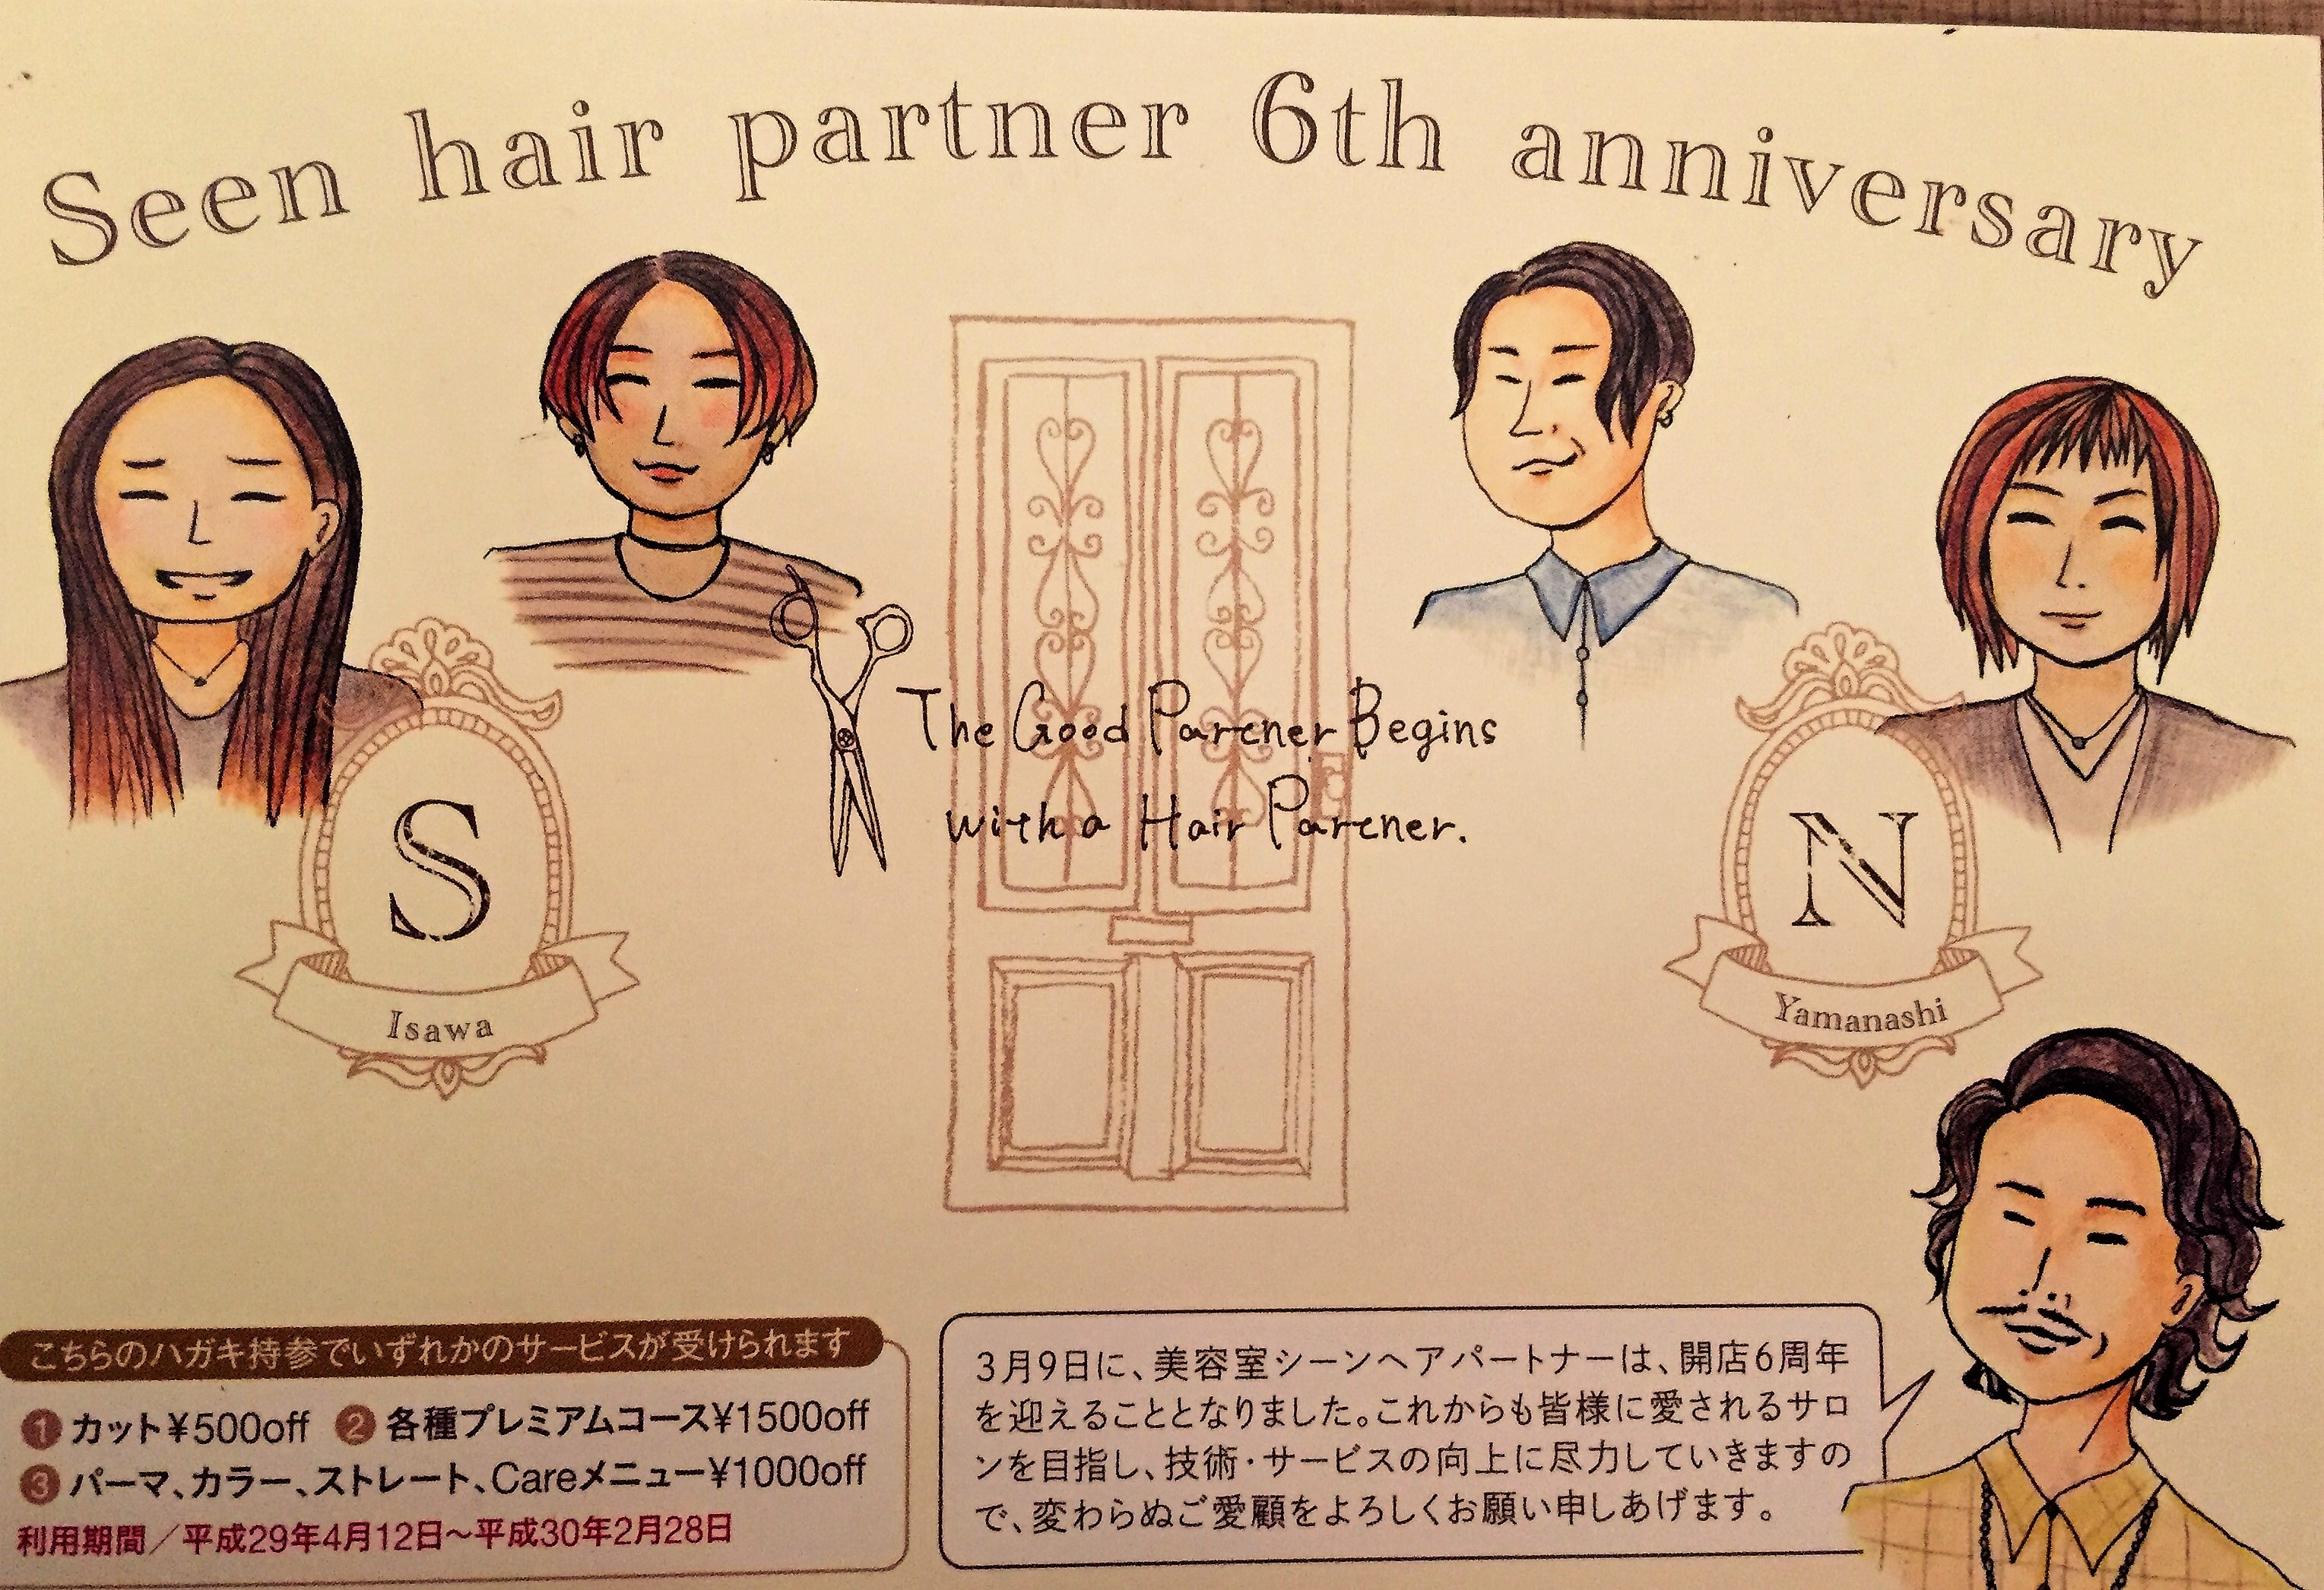 http://www.seen-hairpartner.com/news_blog/FullSizeR.jpg